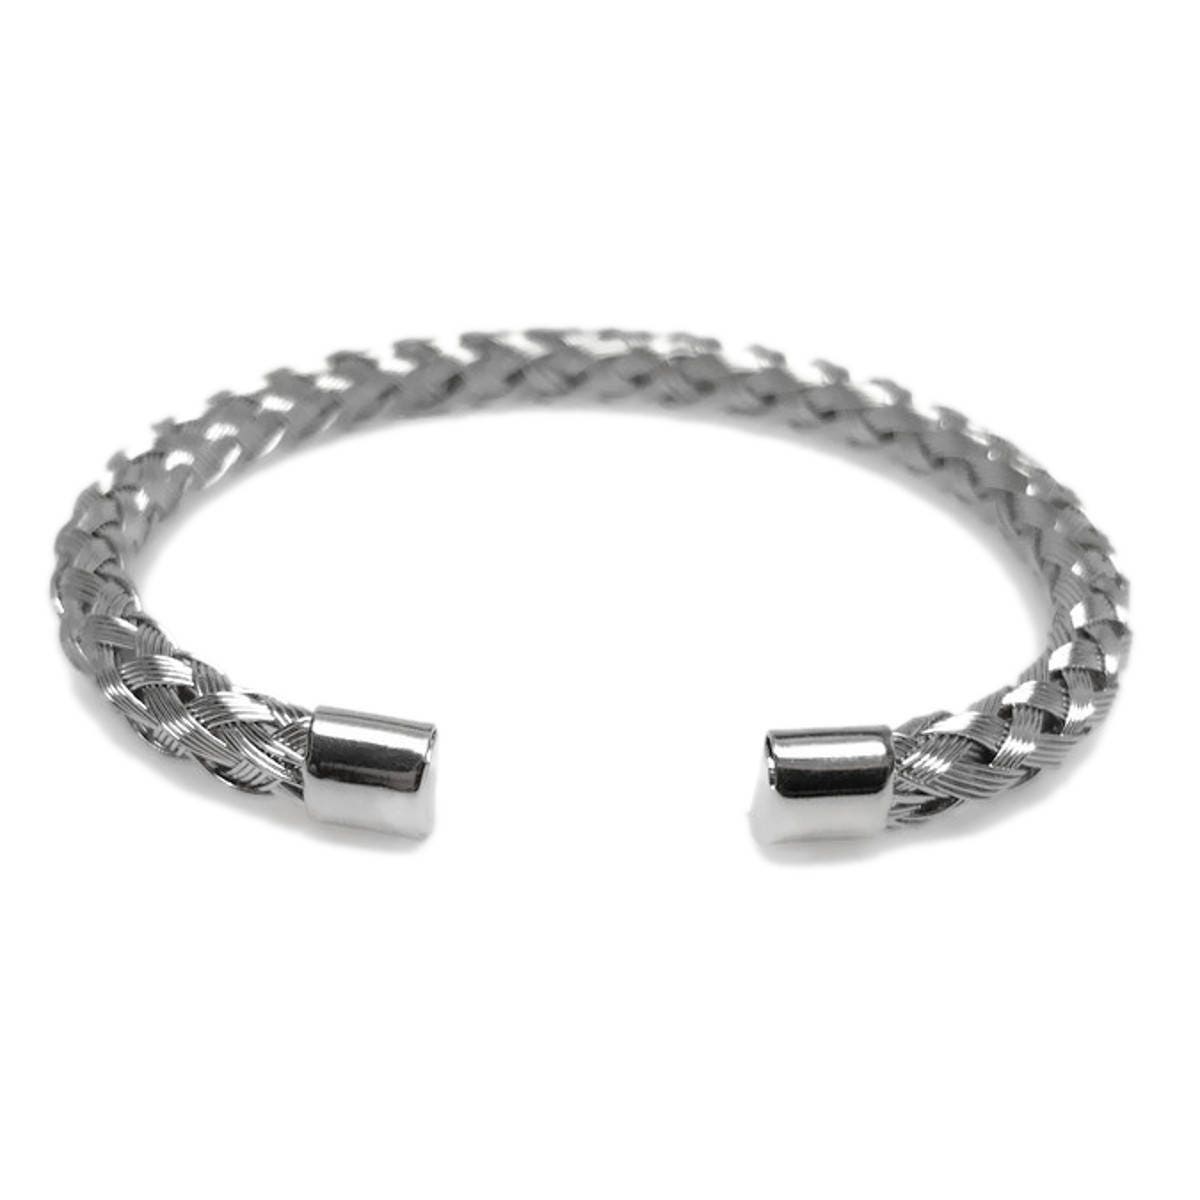 Woven Metal Bracelet, Stainless Steel Jewelry, Silver Braided Bracelet, Unisex Jewelry, Gift for Girlfriend, Boyfriend Bracelet